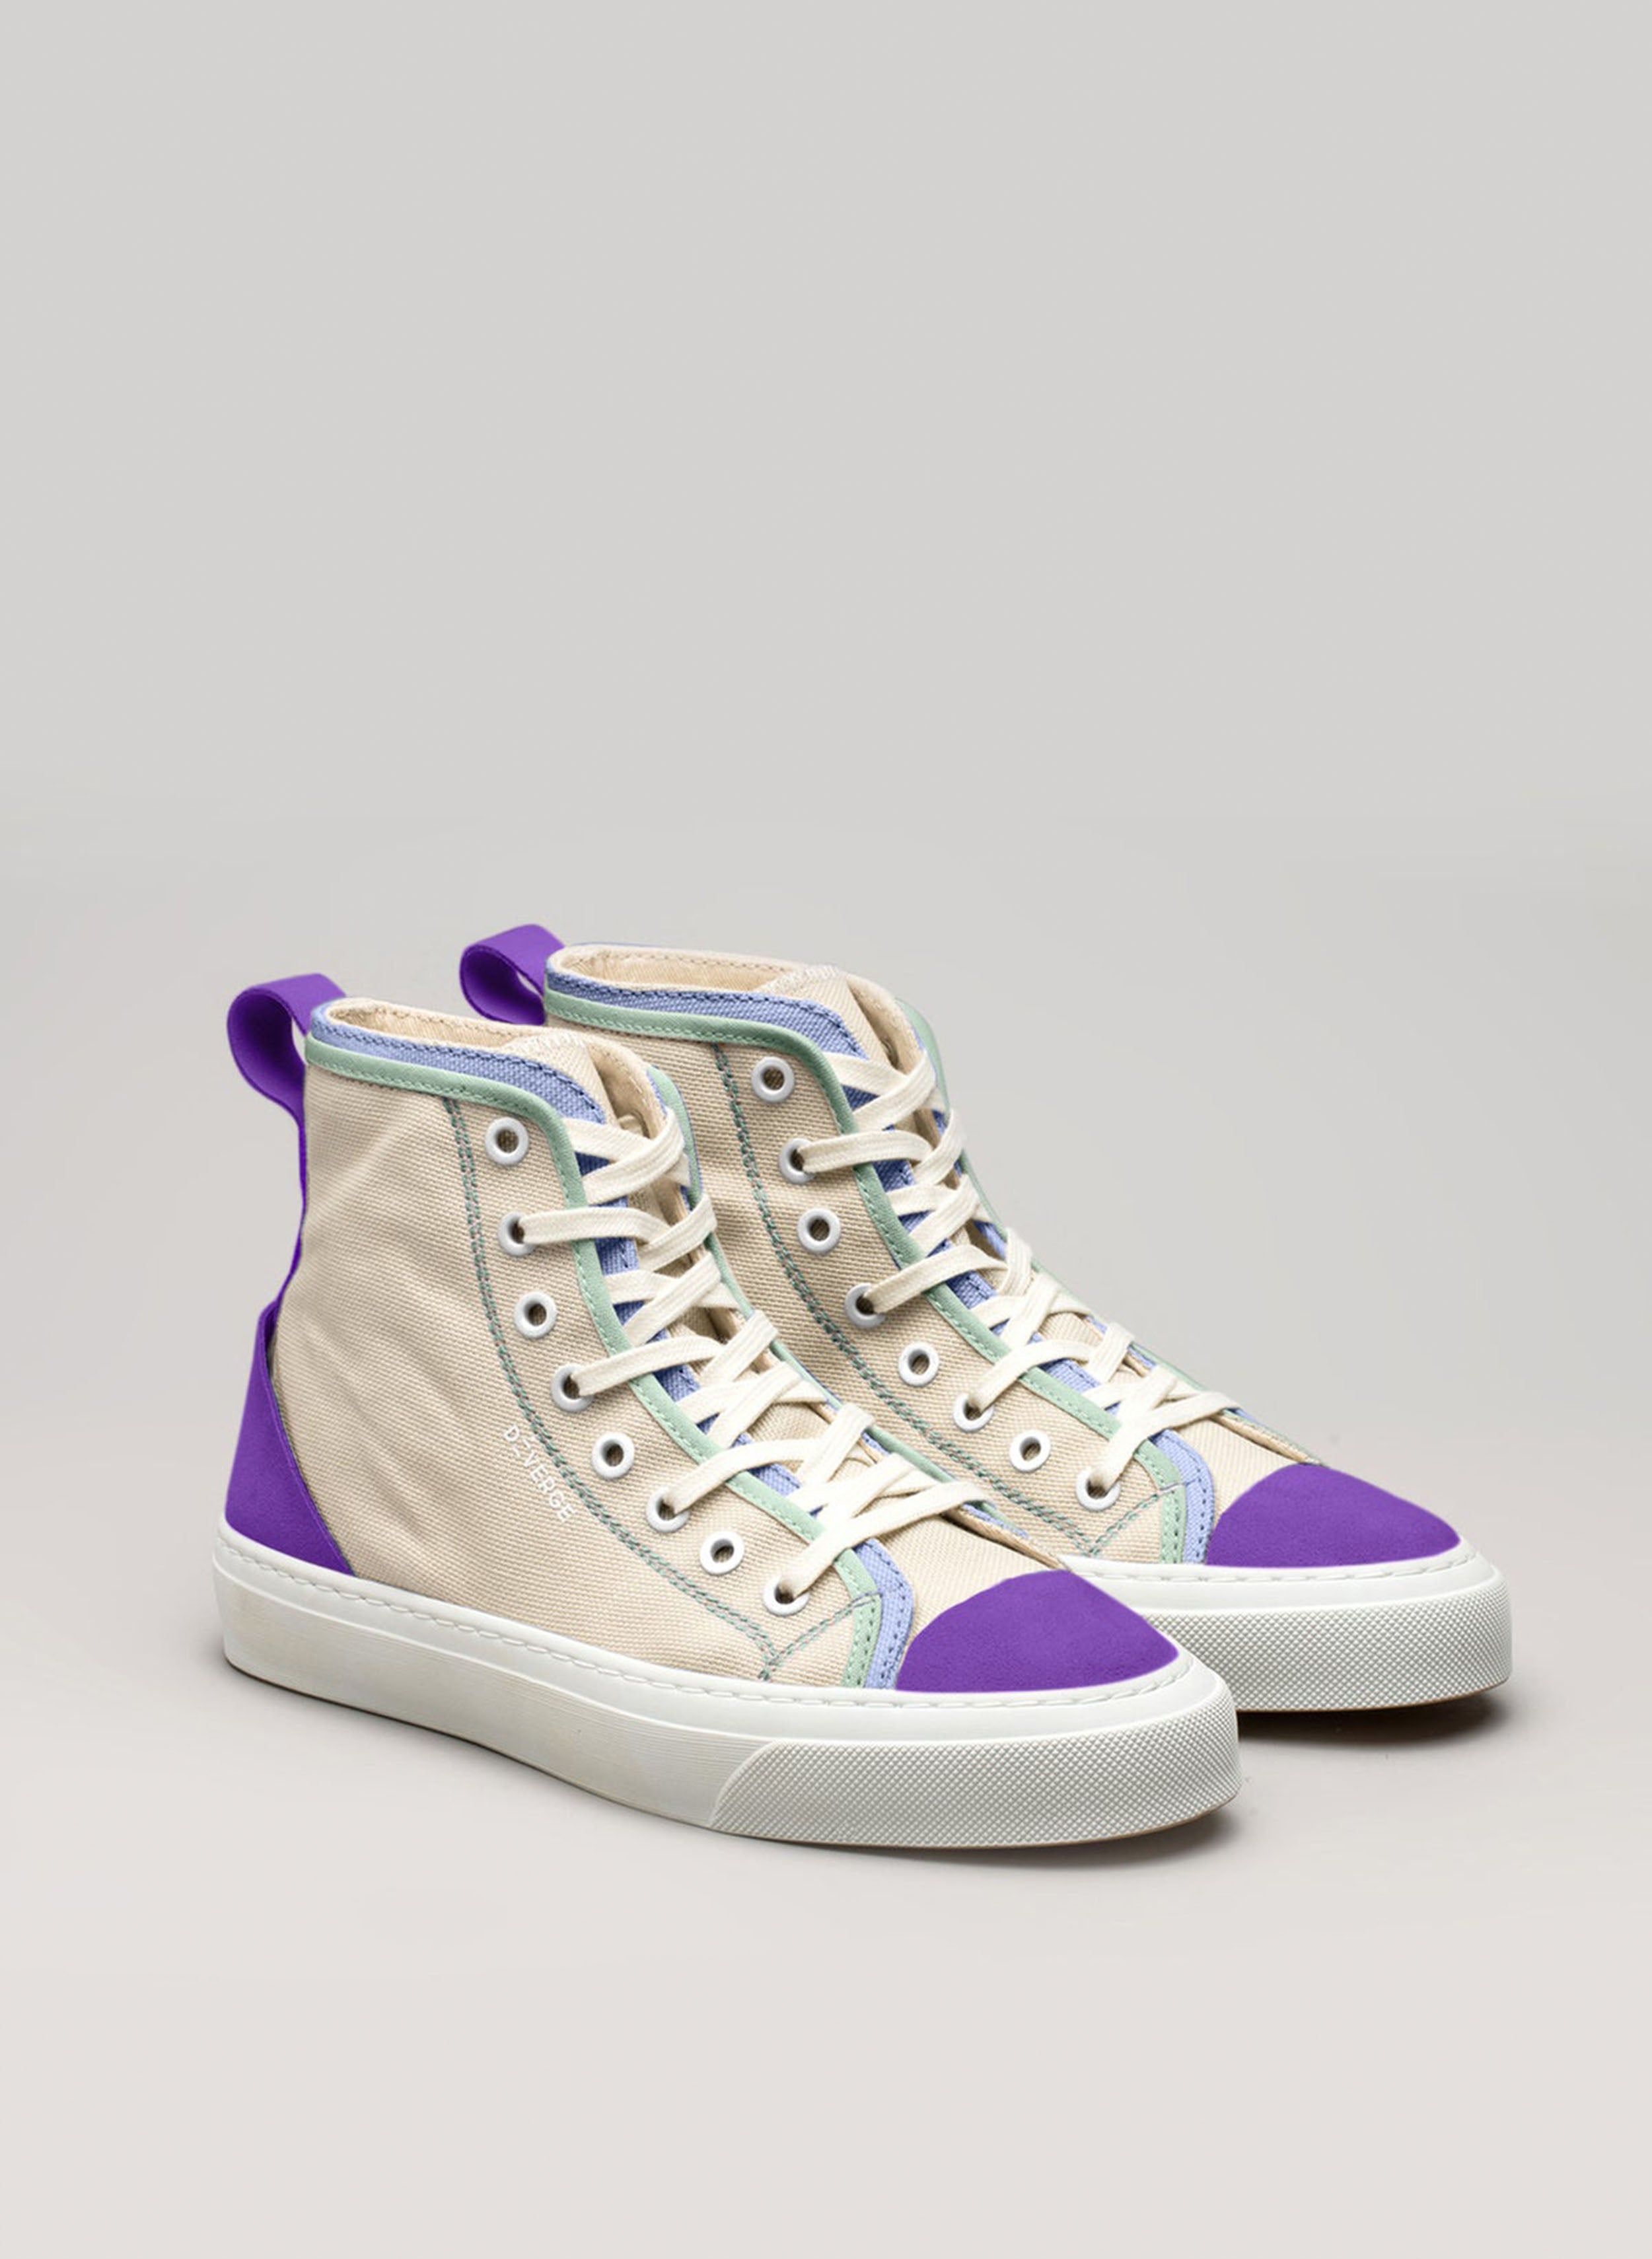 Une paire de chaussures de sport personnalisées sneakers de Diverge pour promouvoir l'impact social par le biais du projet imagine.